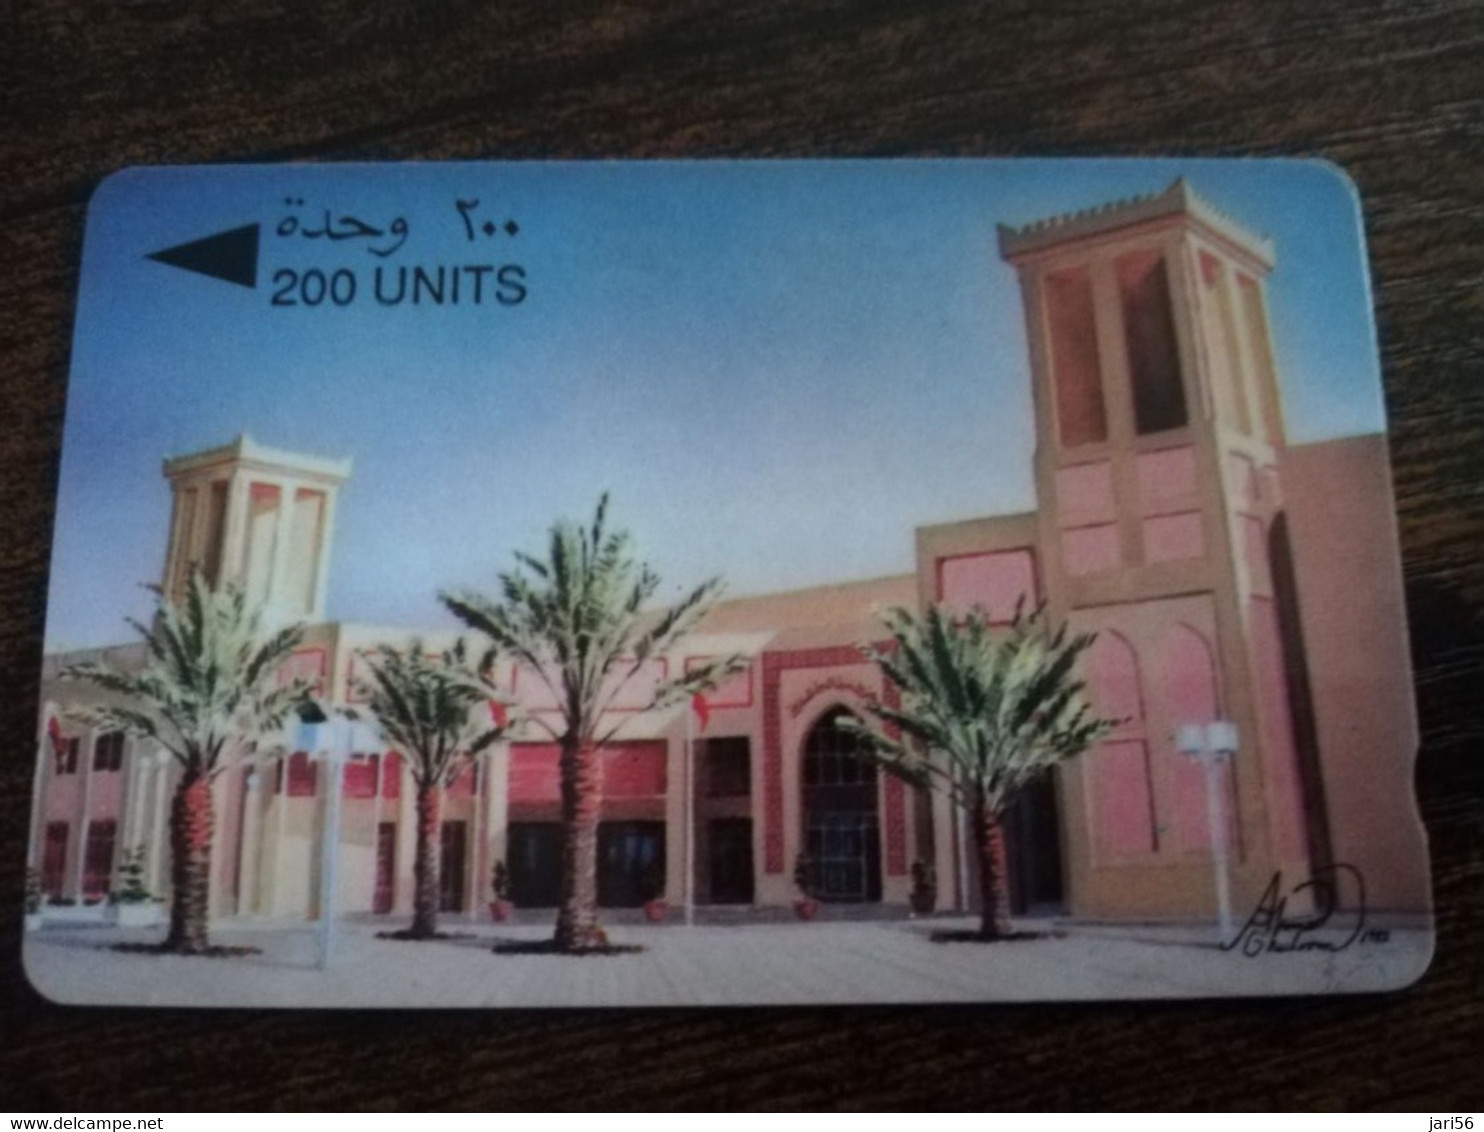 BAHRAIN   GPT CARD 200  UNITS/ BAHRAIN EXIBITION CENTRE    / BHN42B / 25BAHB SHALLOW  NOTCH    **9152** - Bahrein